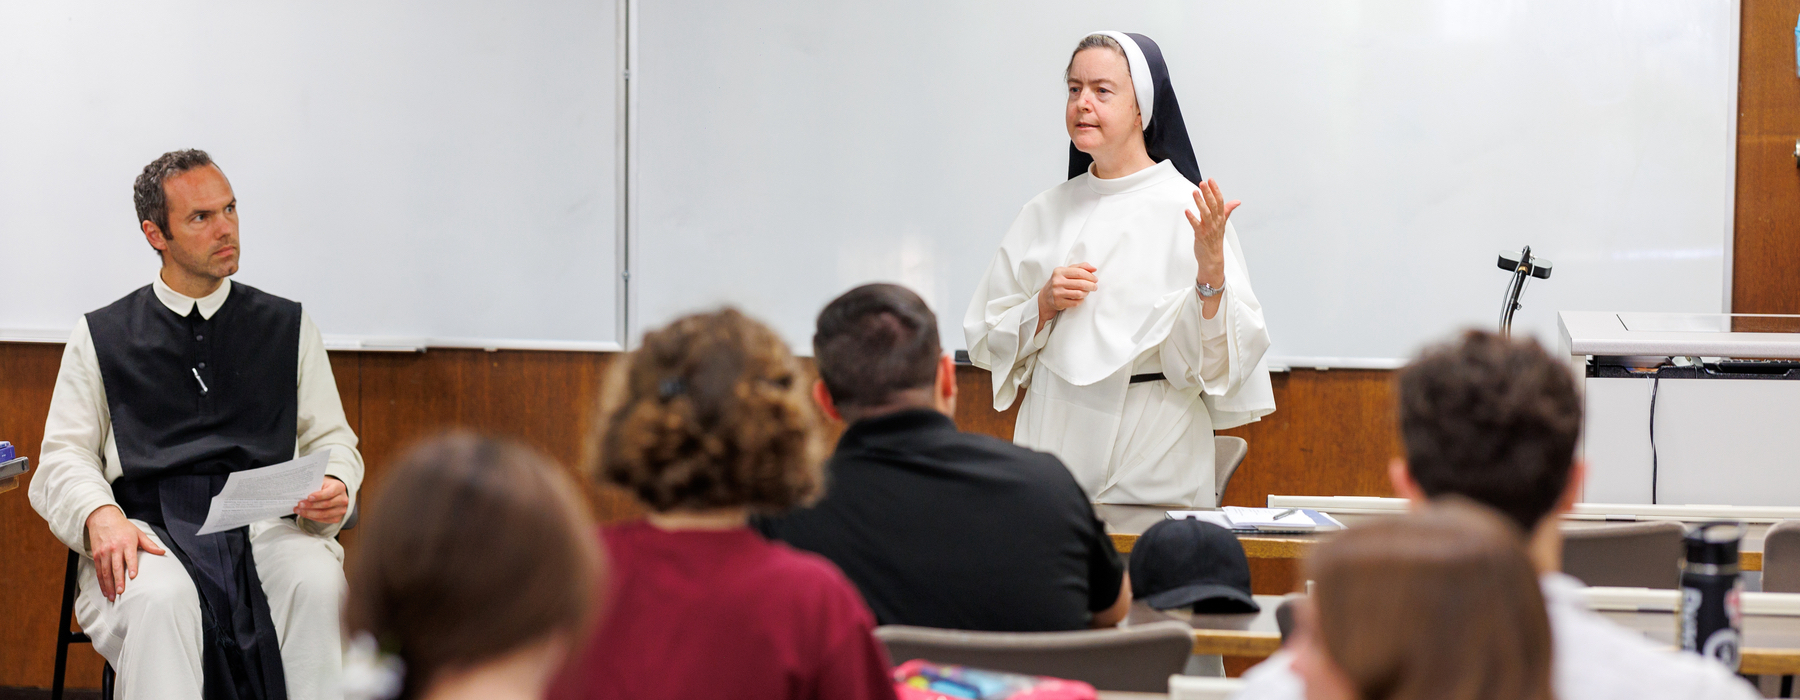 Nun teaching class